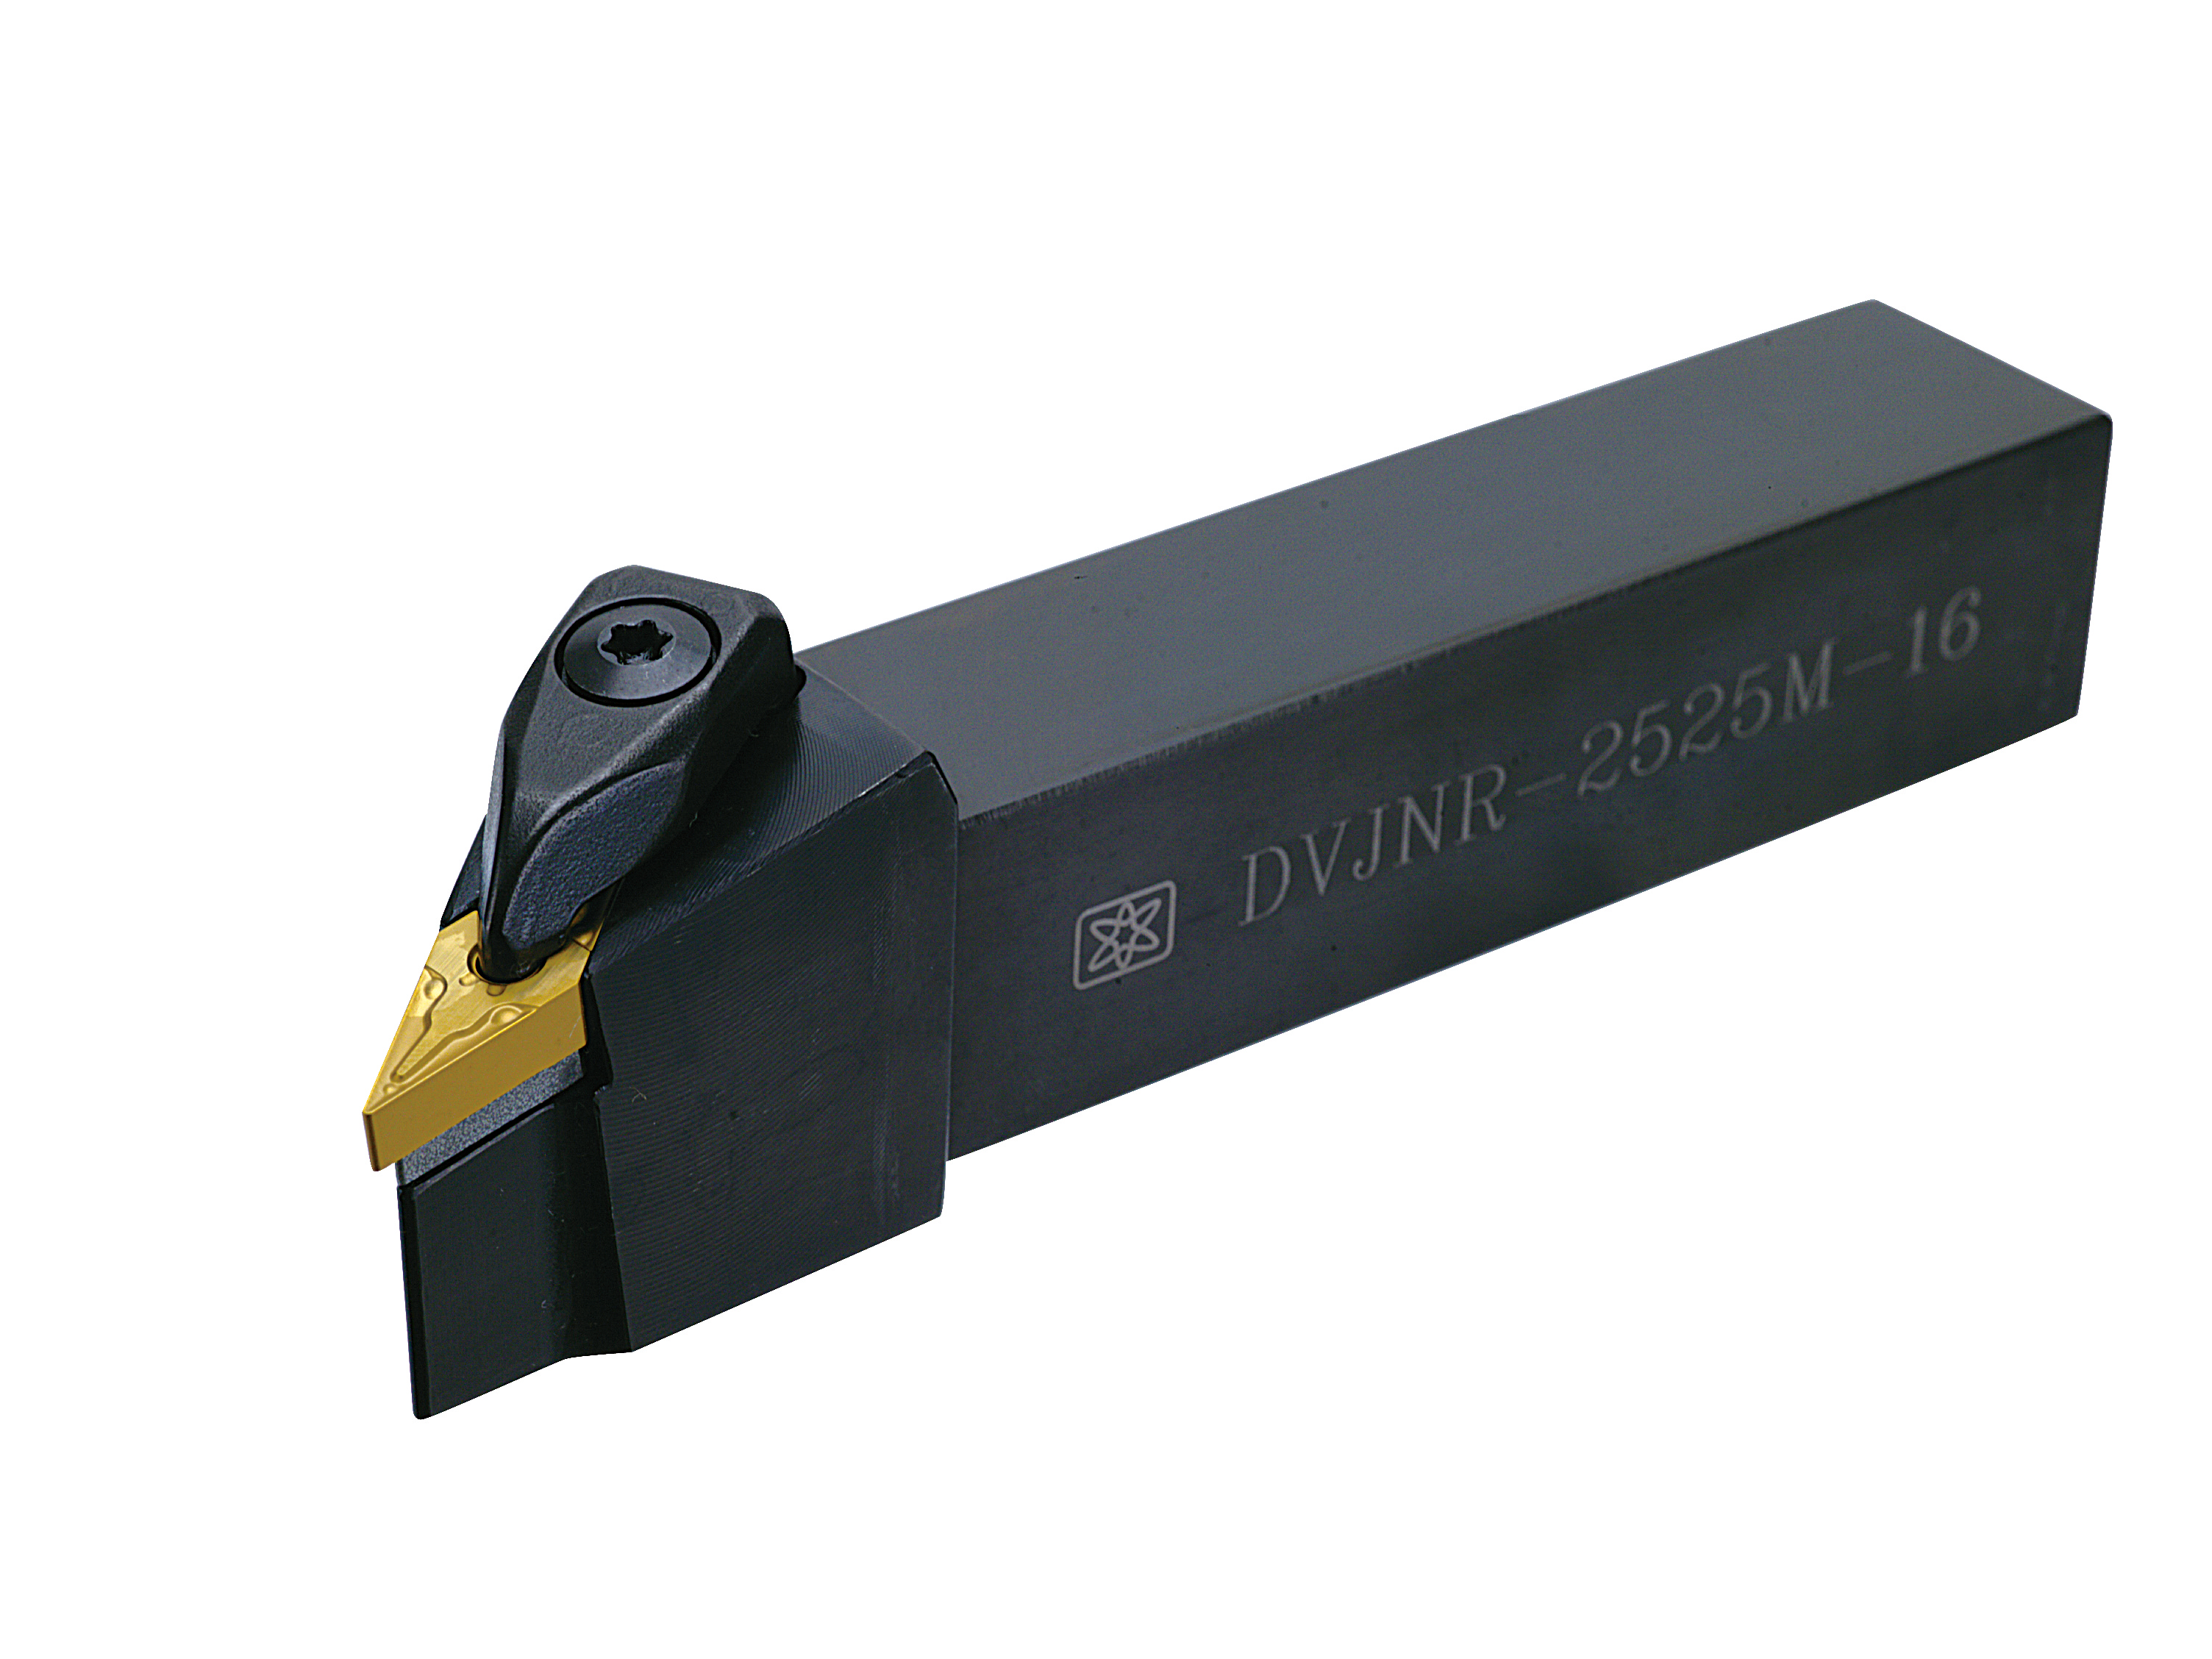 DVJNR (VNMG1604) External Turning Tool Holder